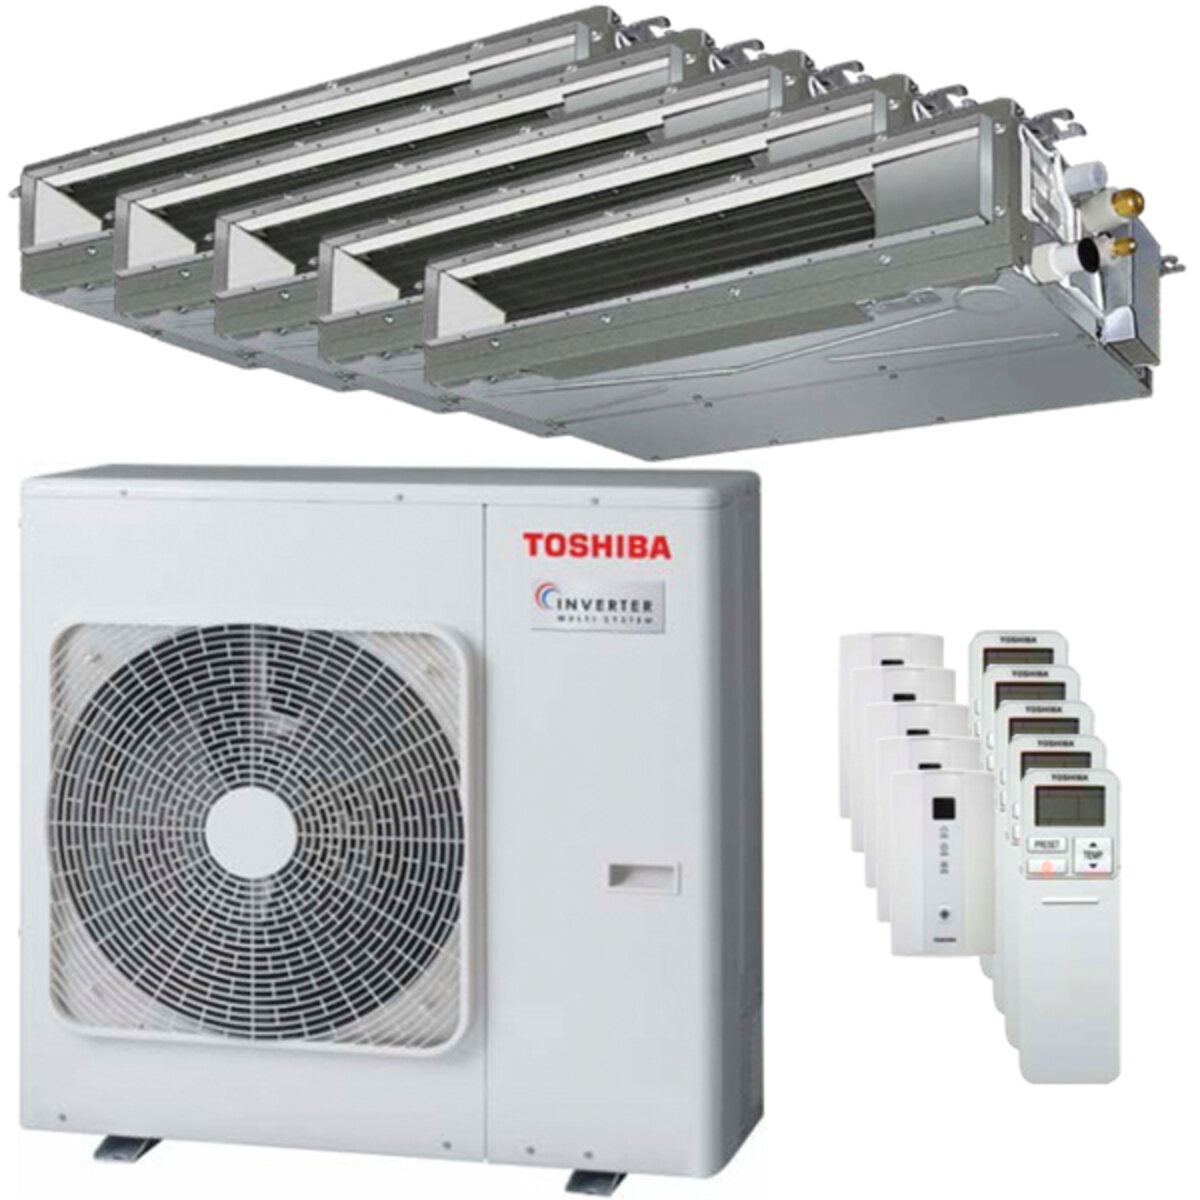 Toshiba Ductable Air Conditioner U2 Penta Split 7000 + 9000 + 9000 + 9000 + 22000 BTU Inverter A++ Außengerät 10,0 kW